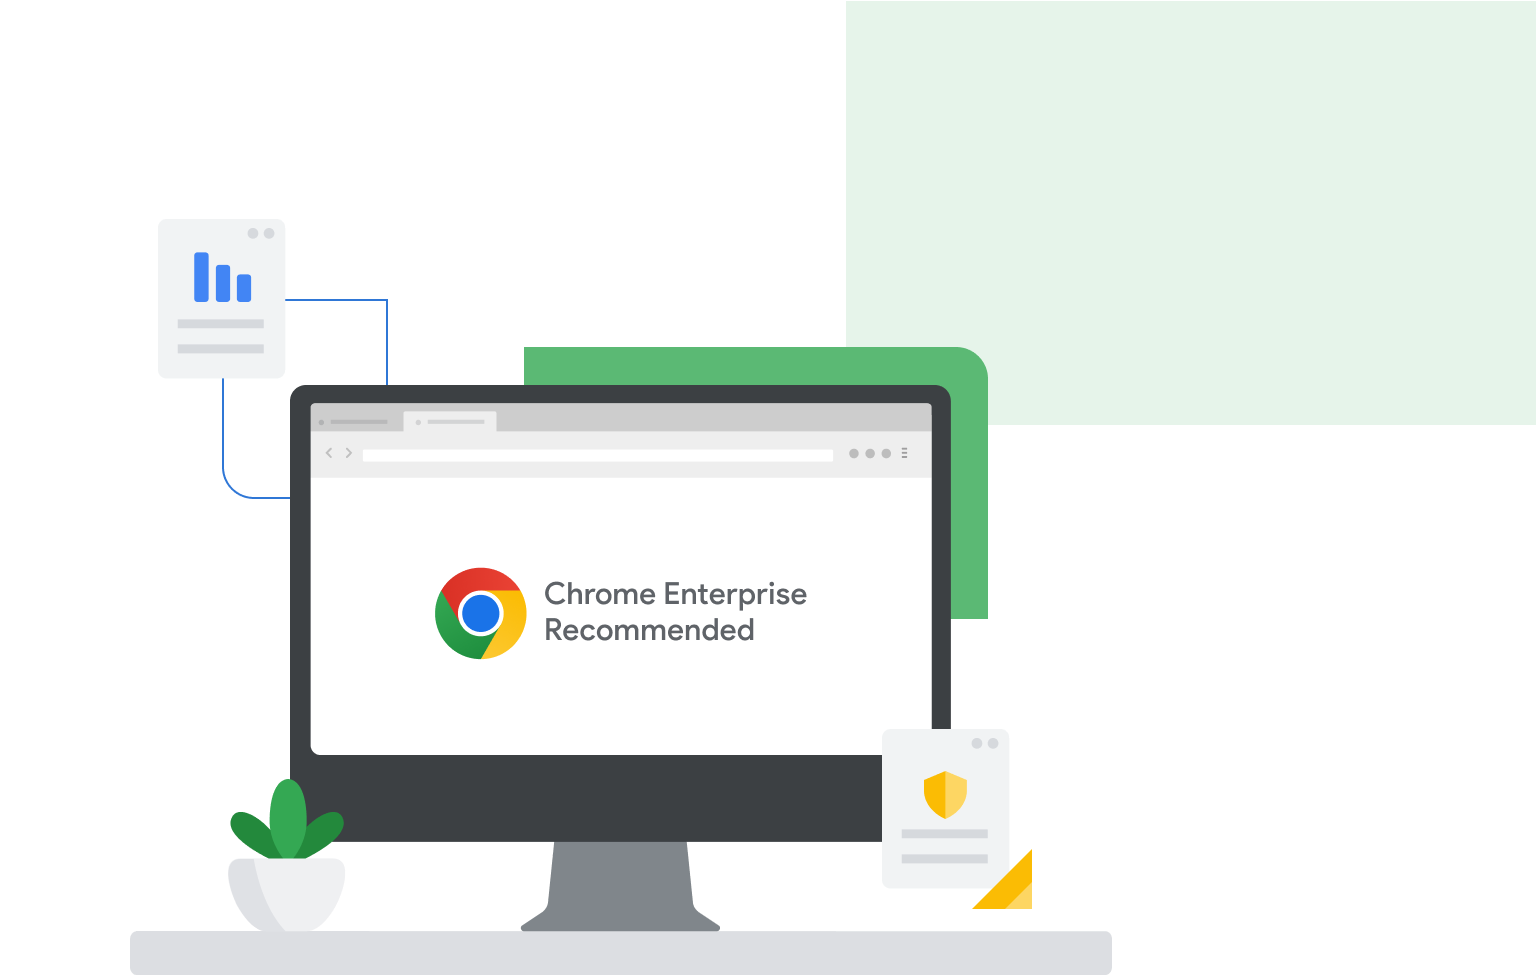 屏幕上显示“Chrome Enterprise Recommended”的计算机显示器。显示器旁边显示的是带有条形图和盾牌图案的页面。